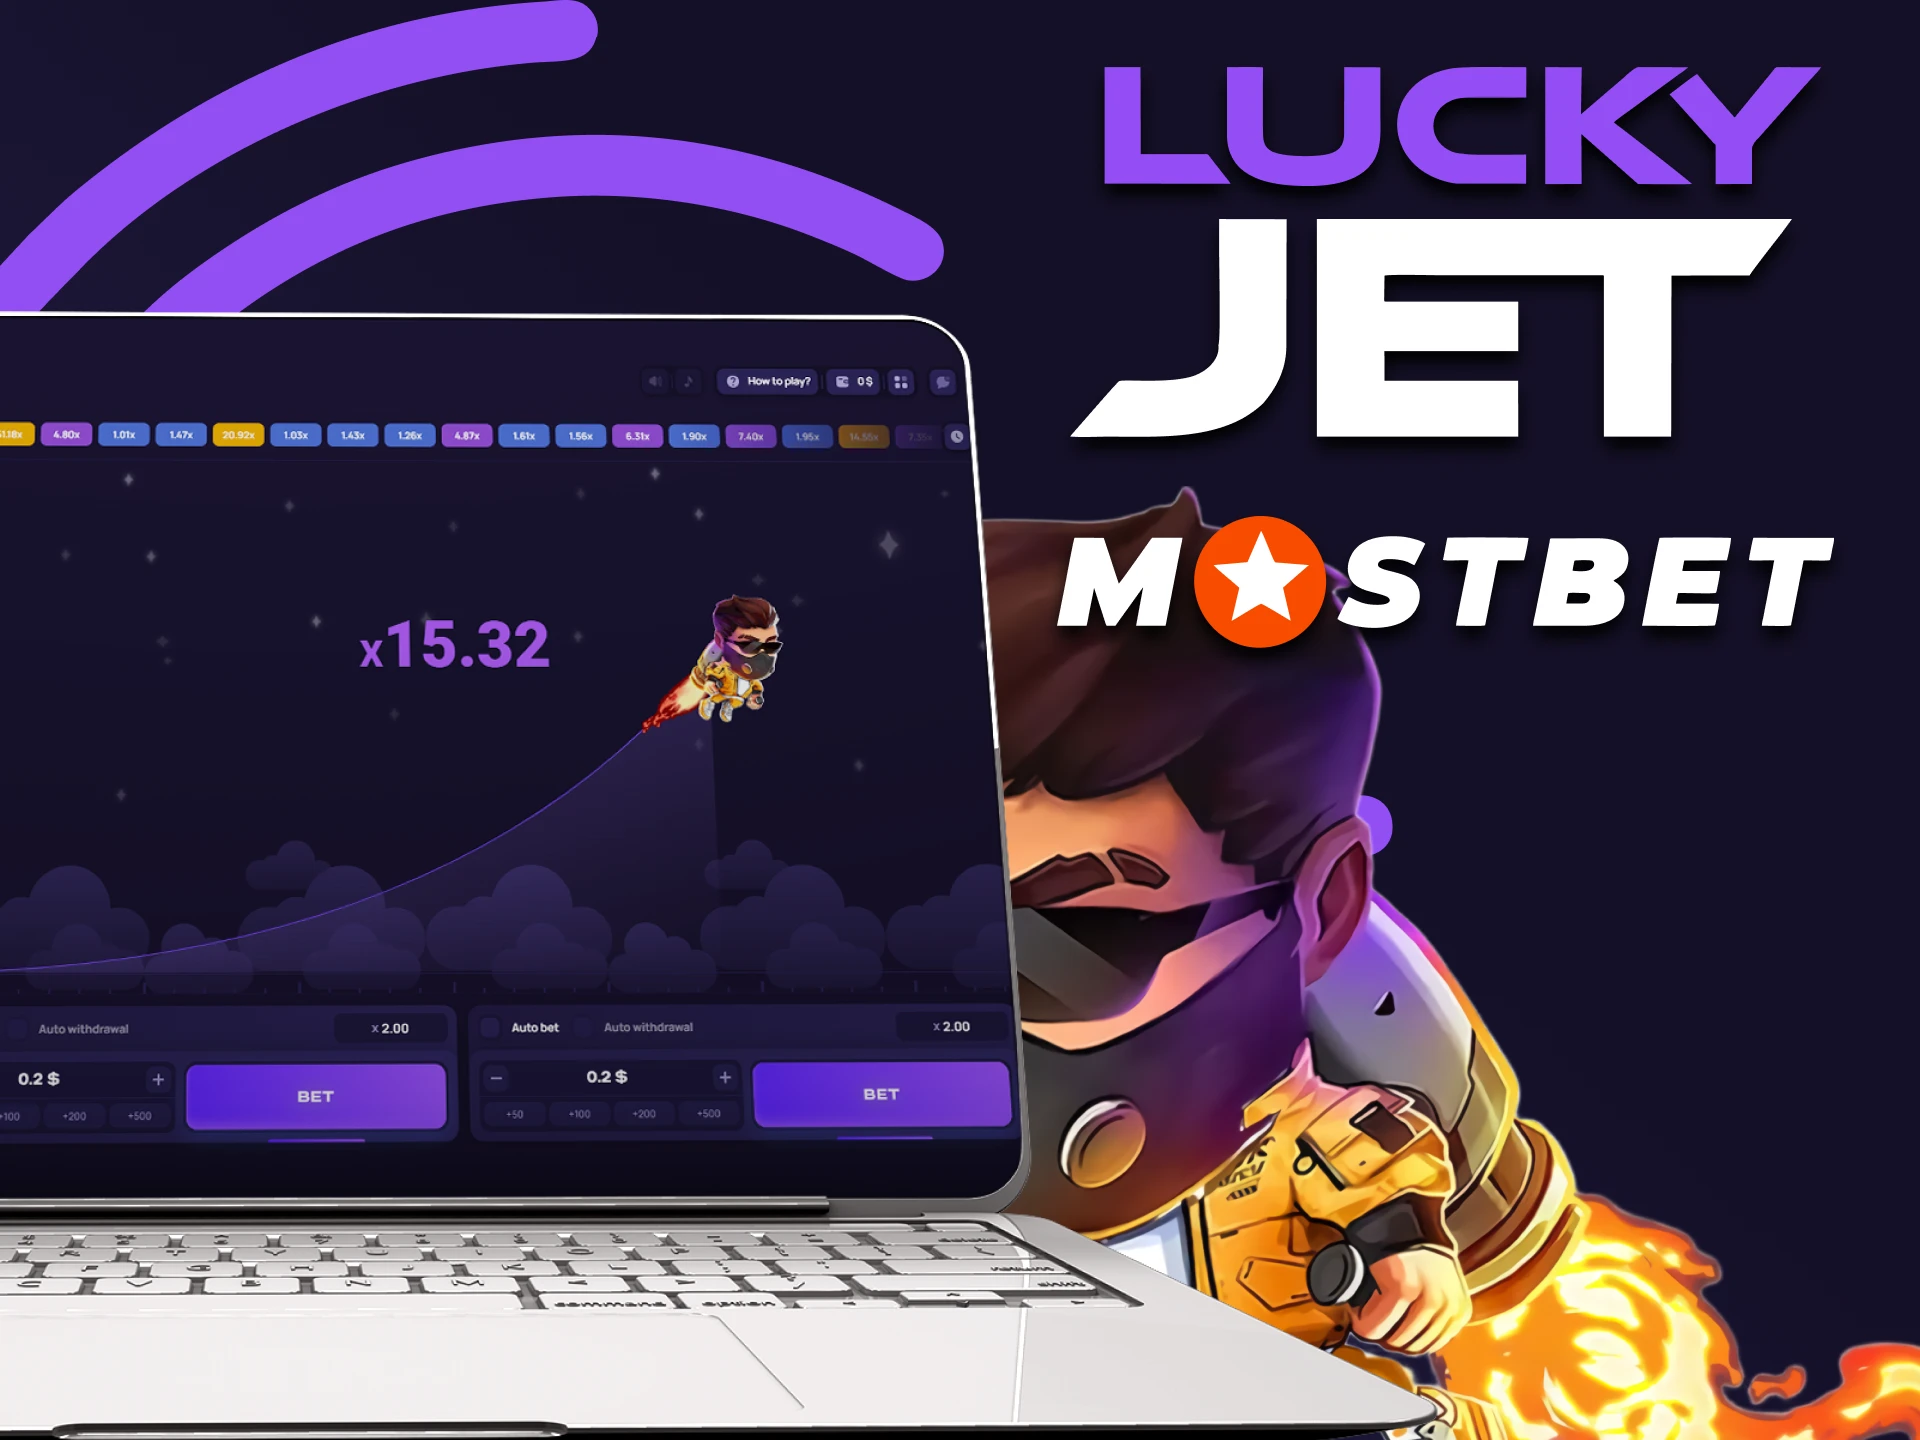 Utilisez le service Mostbet pour jouer à Lucky Jet.